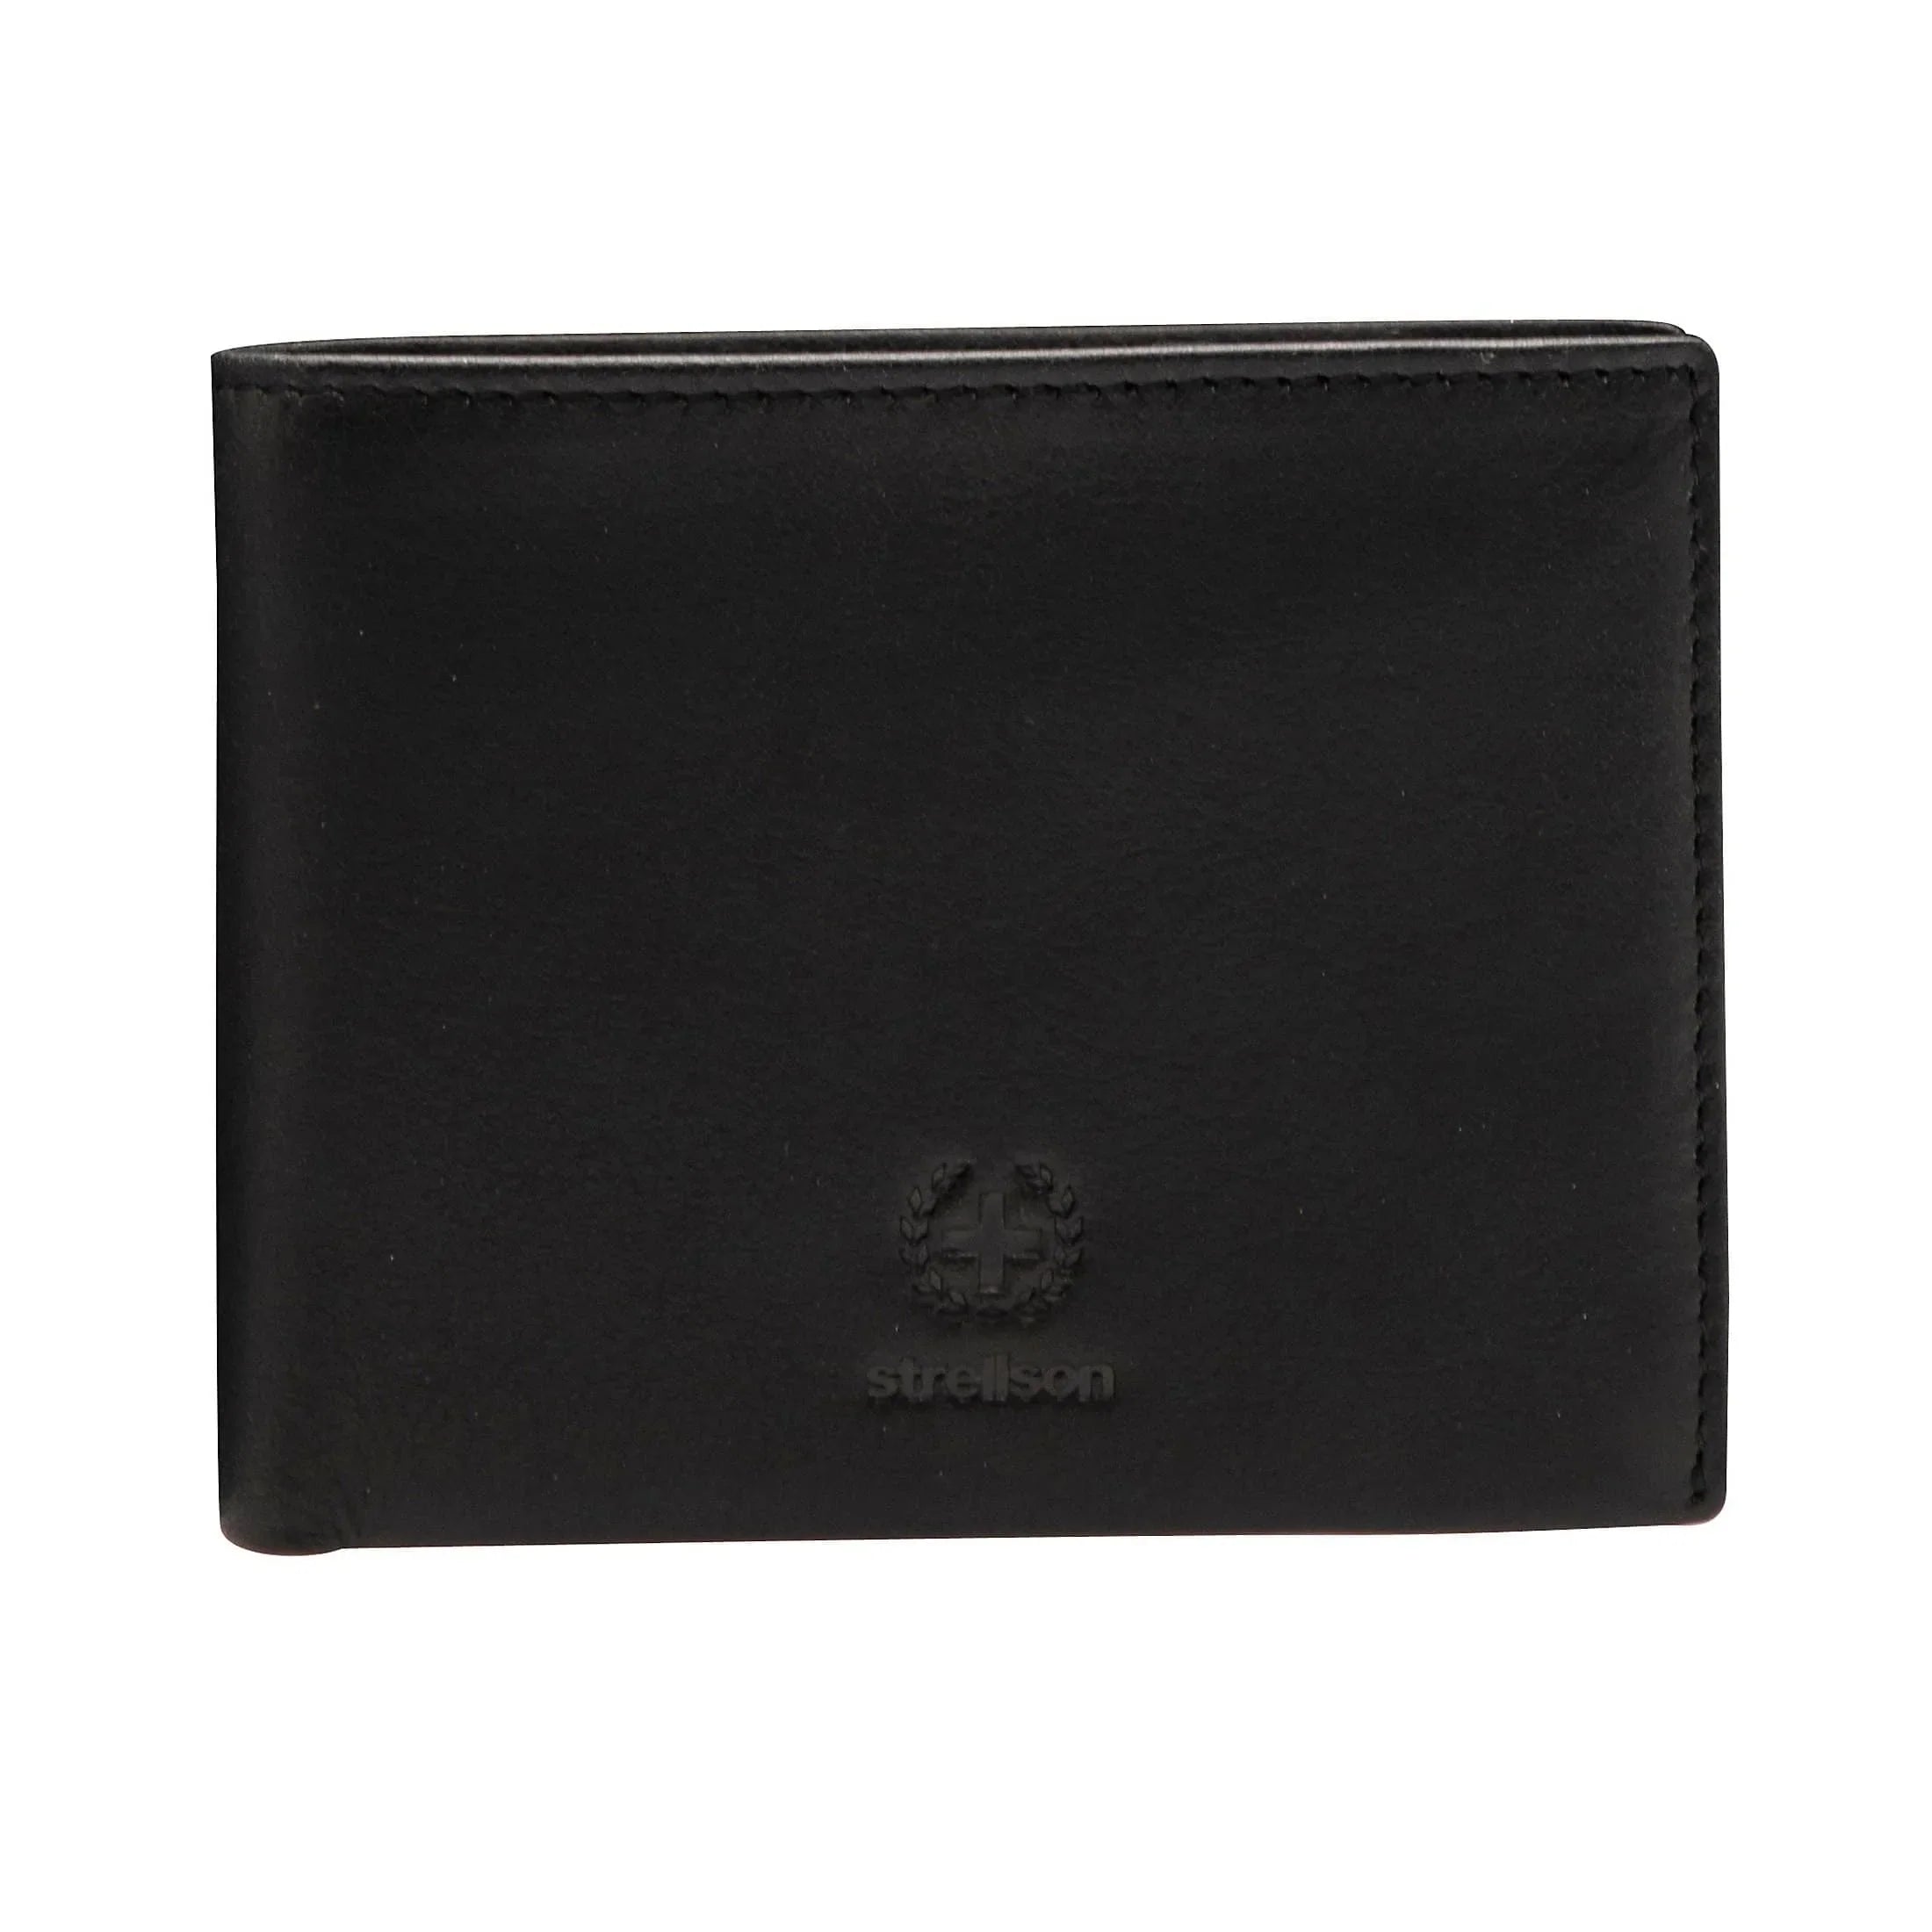 Strellson Blackwall wallet H7 12 cm - Black